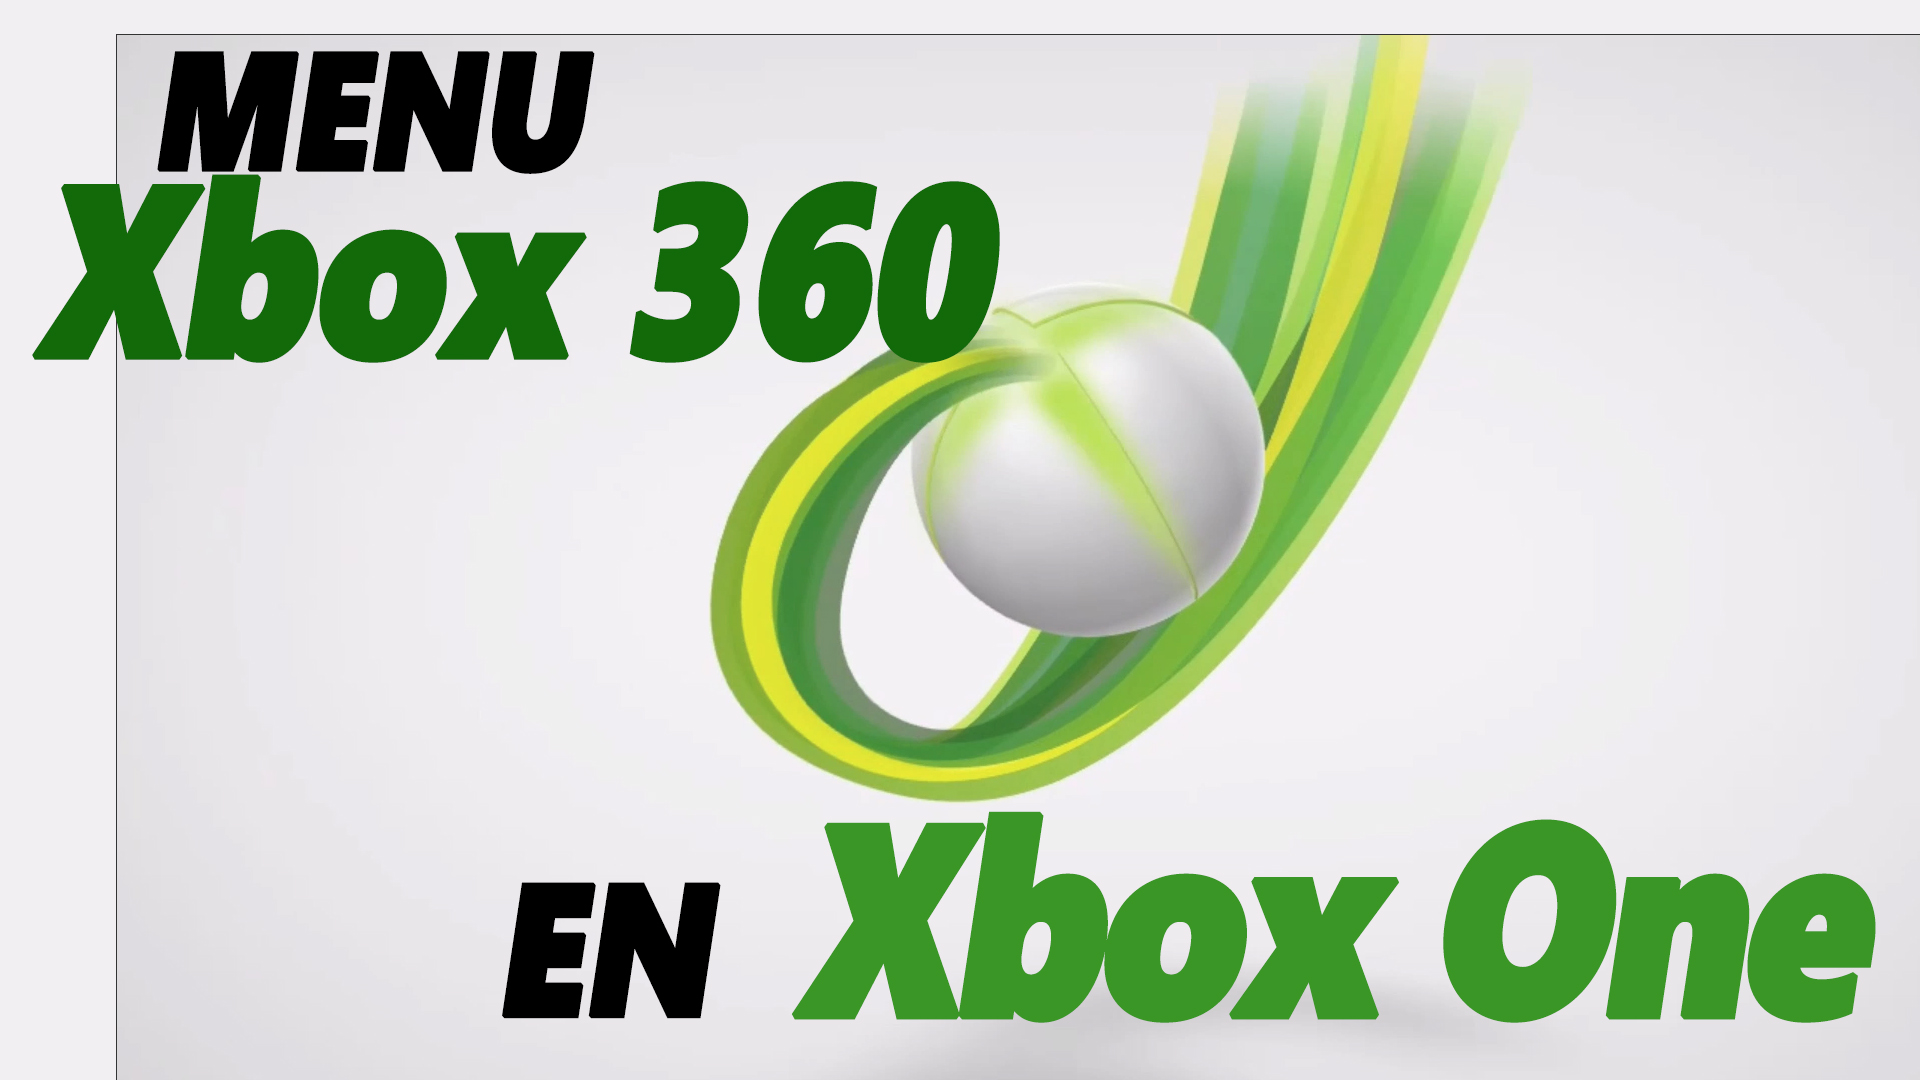 Cómo usar el menú de la Xbox 360 en Xbox One